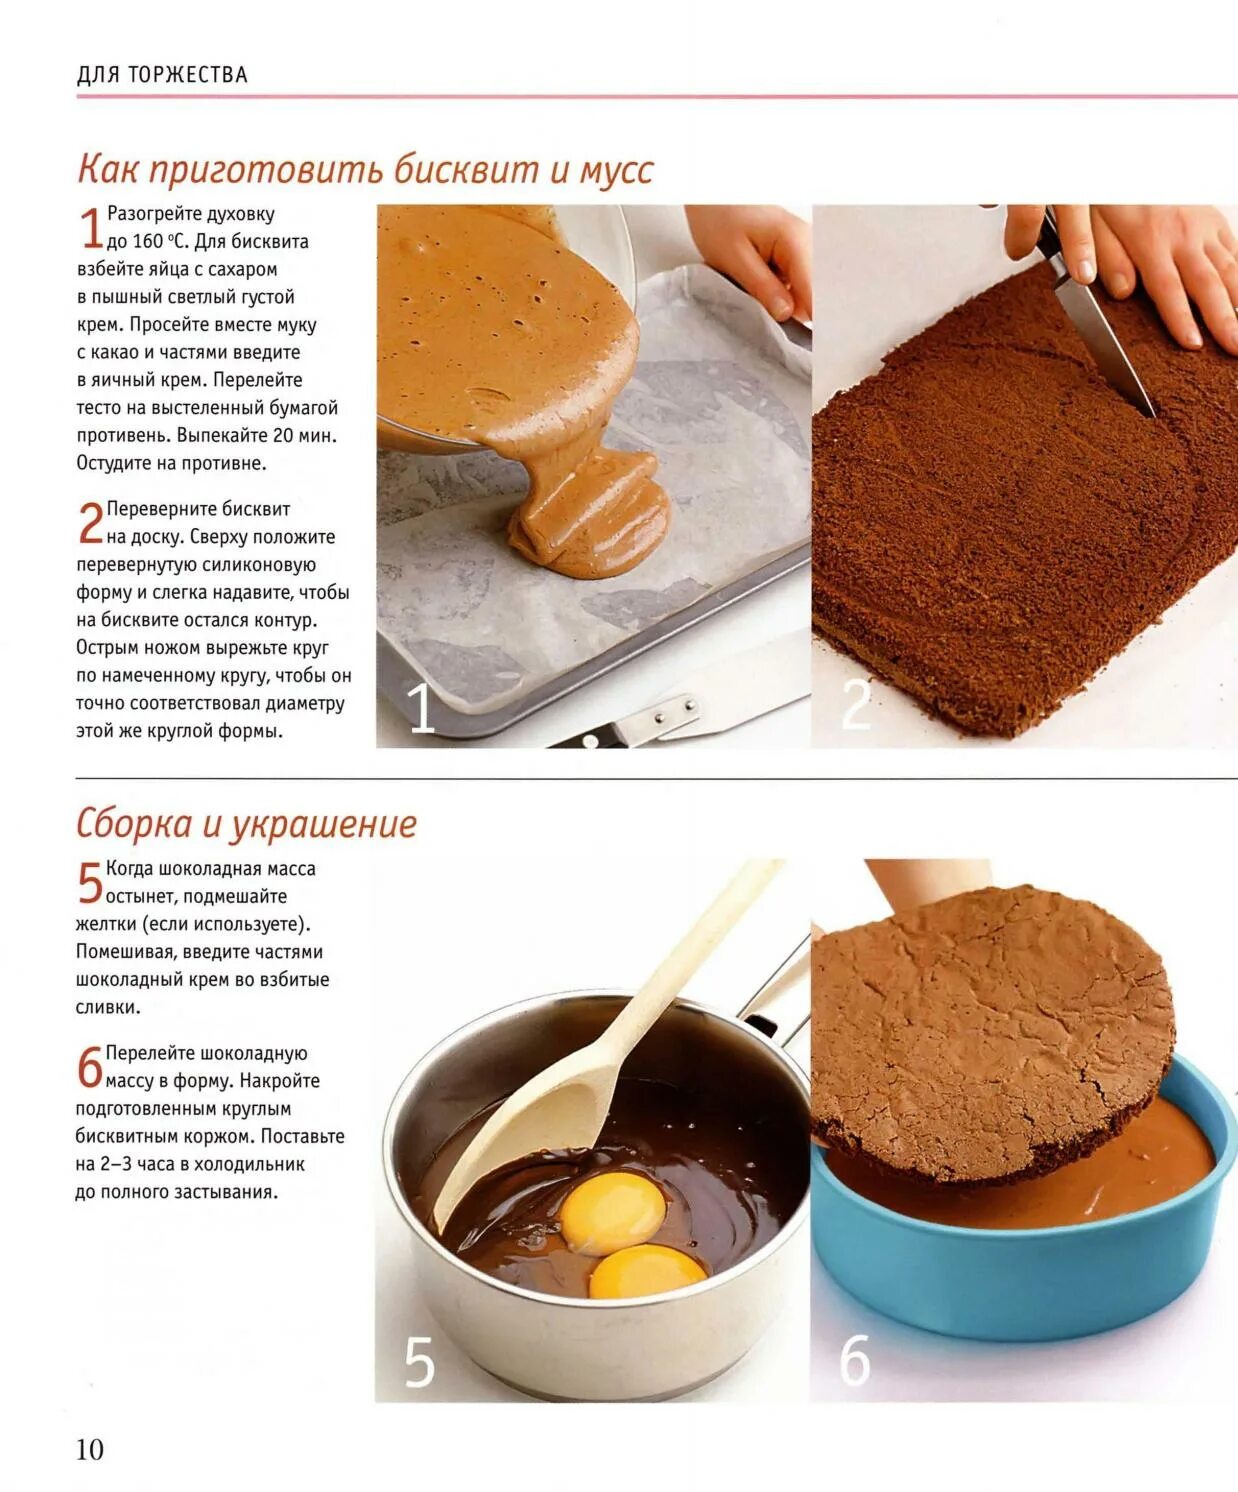 Сколько взбивать бисквит. КСК приготовит бисквит. Рецепт вкусного бисквита. Рецепт бисквита для торта. Как сделать бисквит для торта в домашних условиях рецепт.